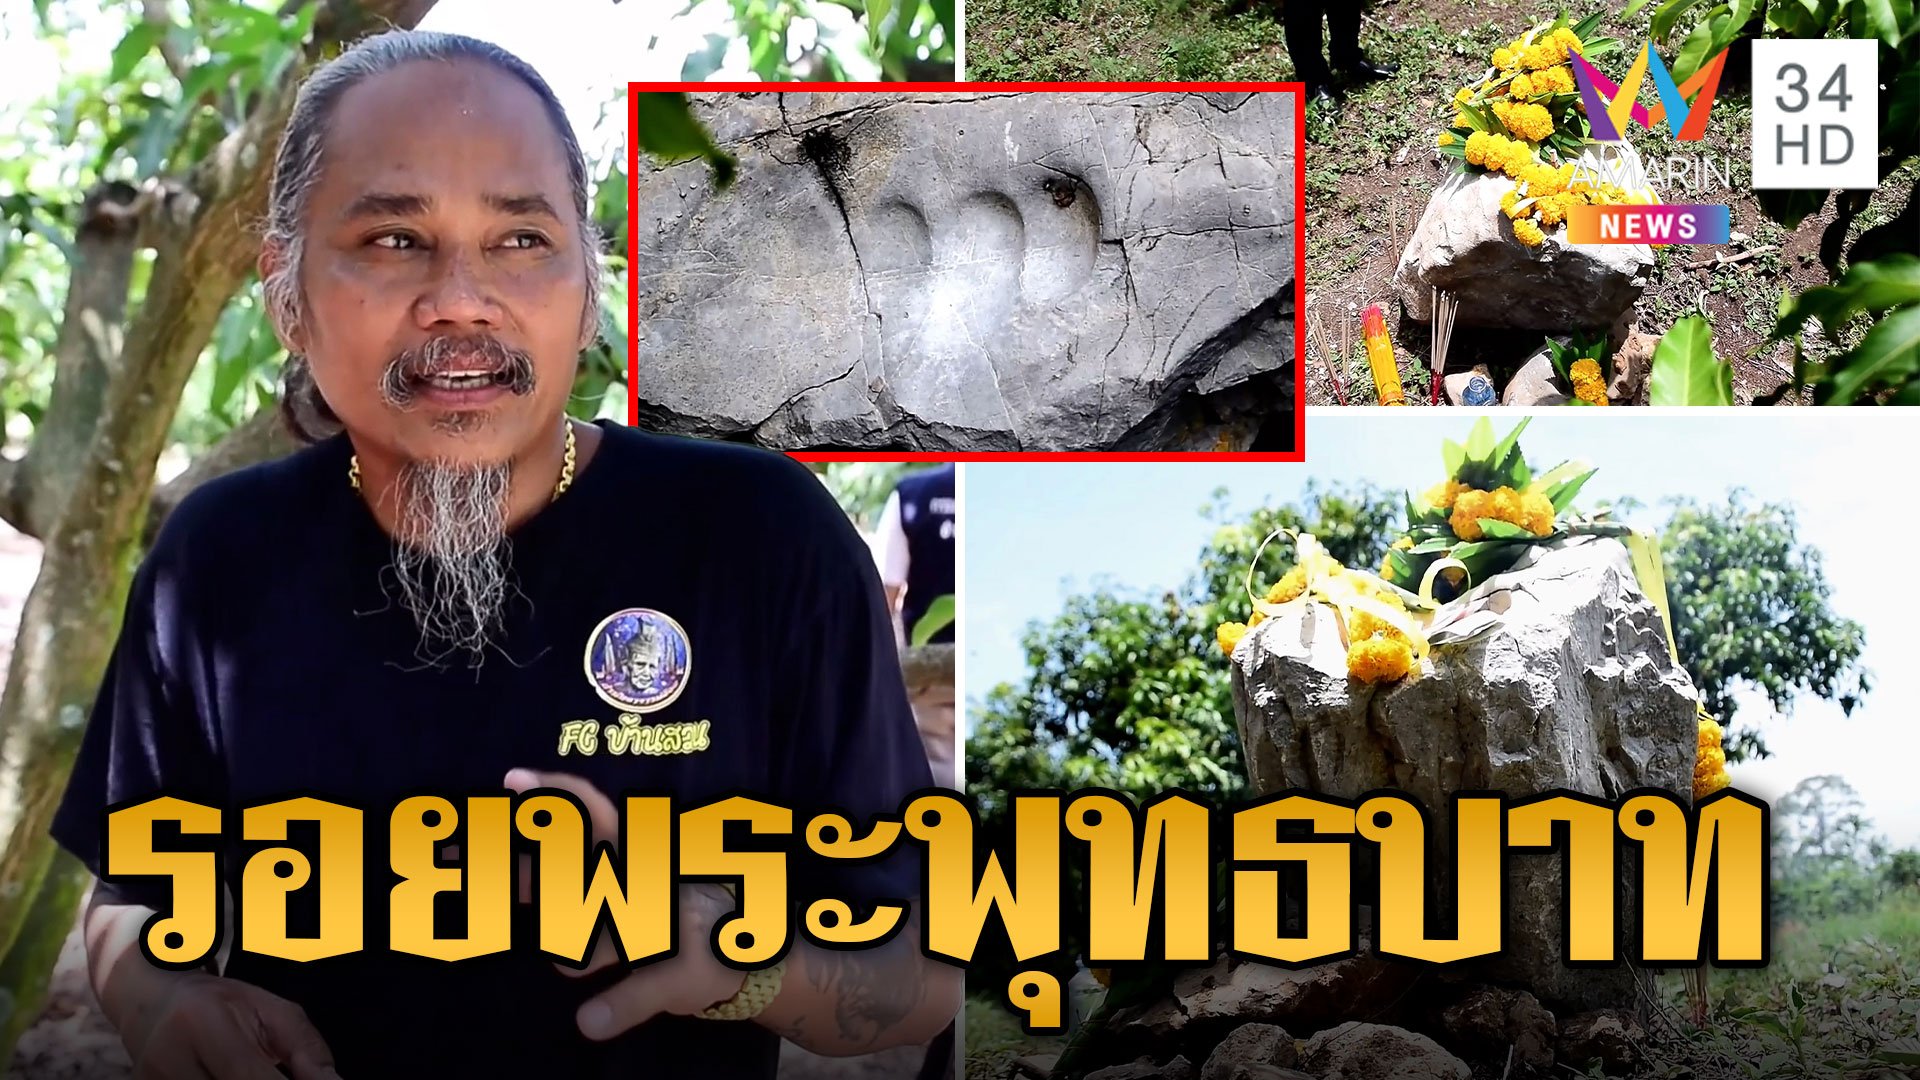 รอยเท้าปริศนาบนก้อนหินผา อายุ 1,000 ปี หมอธรรมเชื่อพระพุทธบาท | ข่าวเที่ยงอมรินทร์ | 16 ส.ค. 66 | AMARIN TVHD34